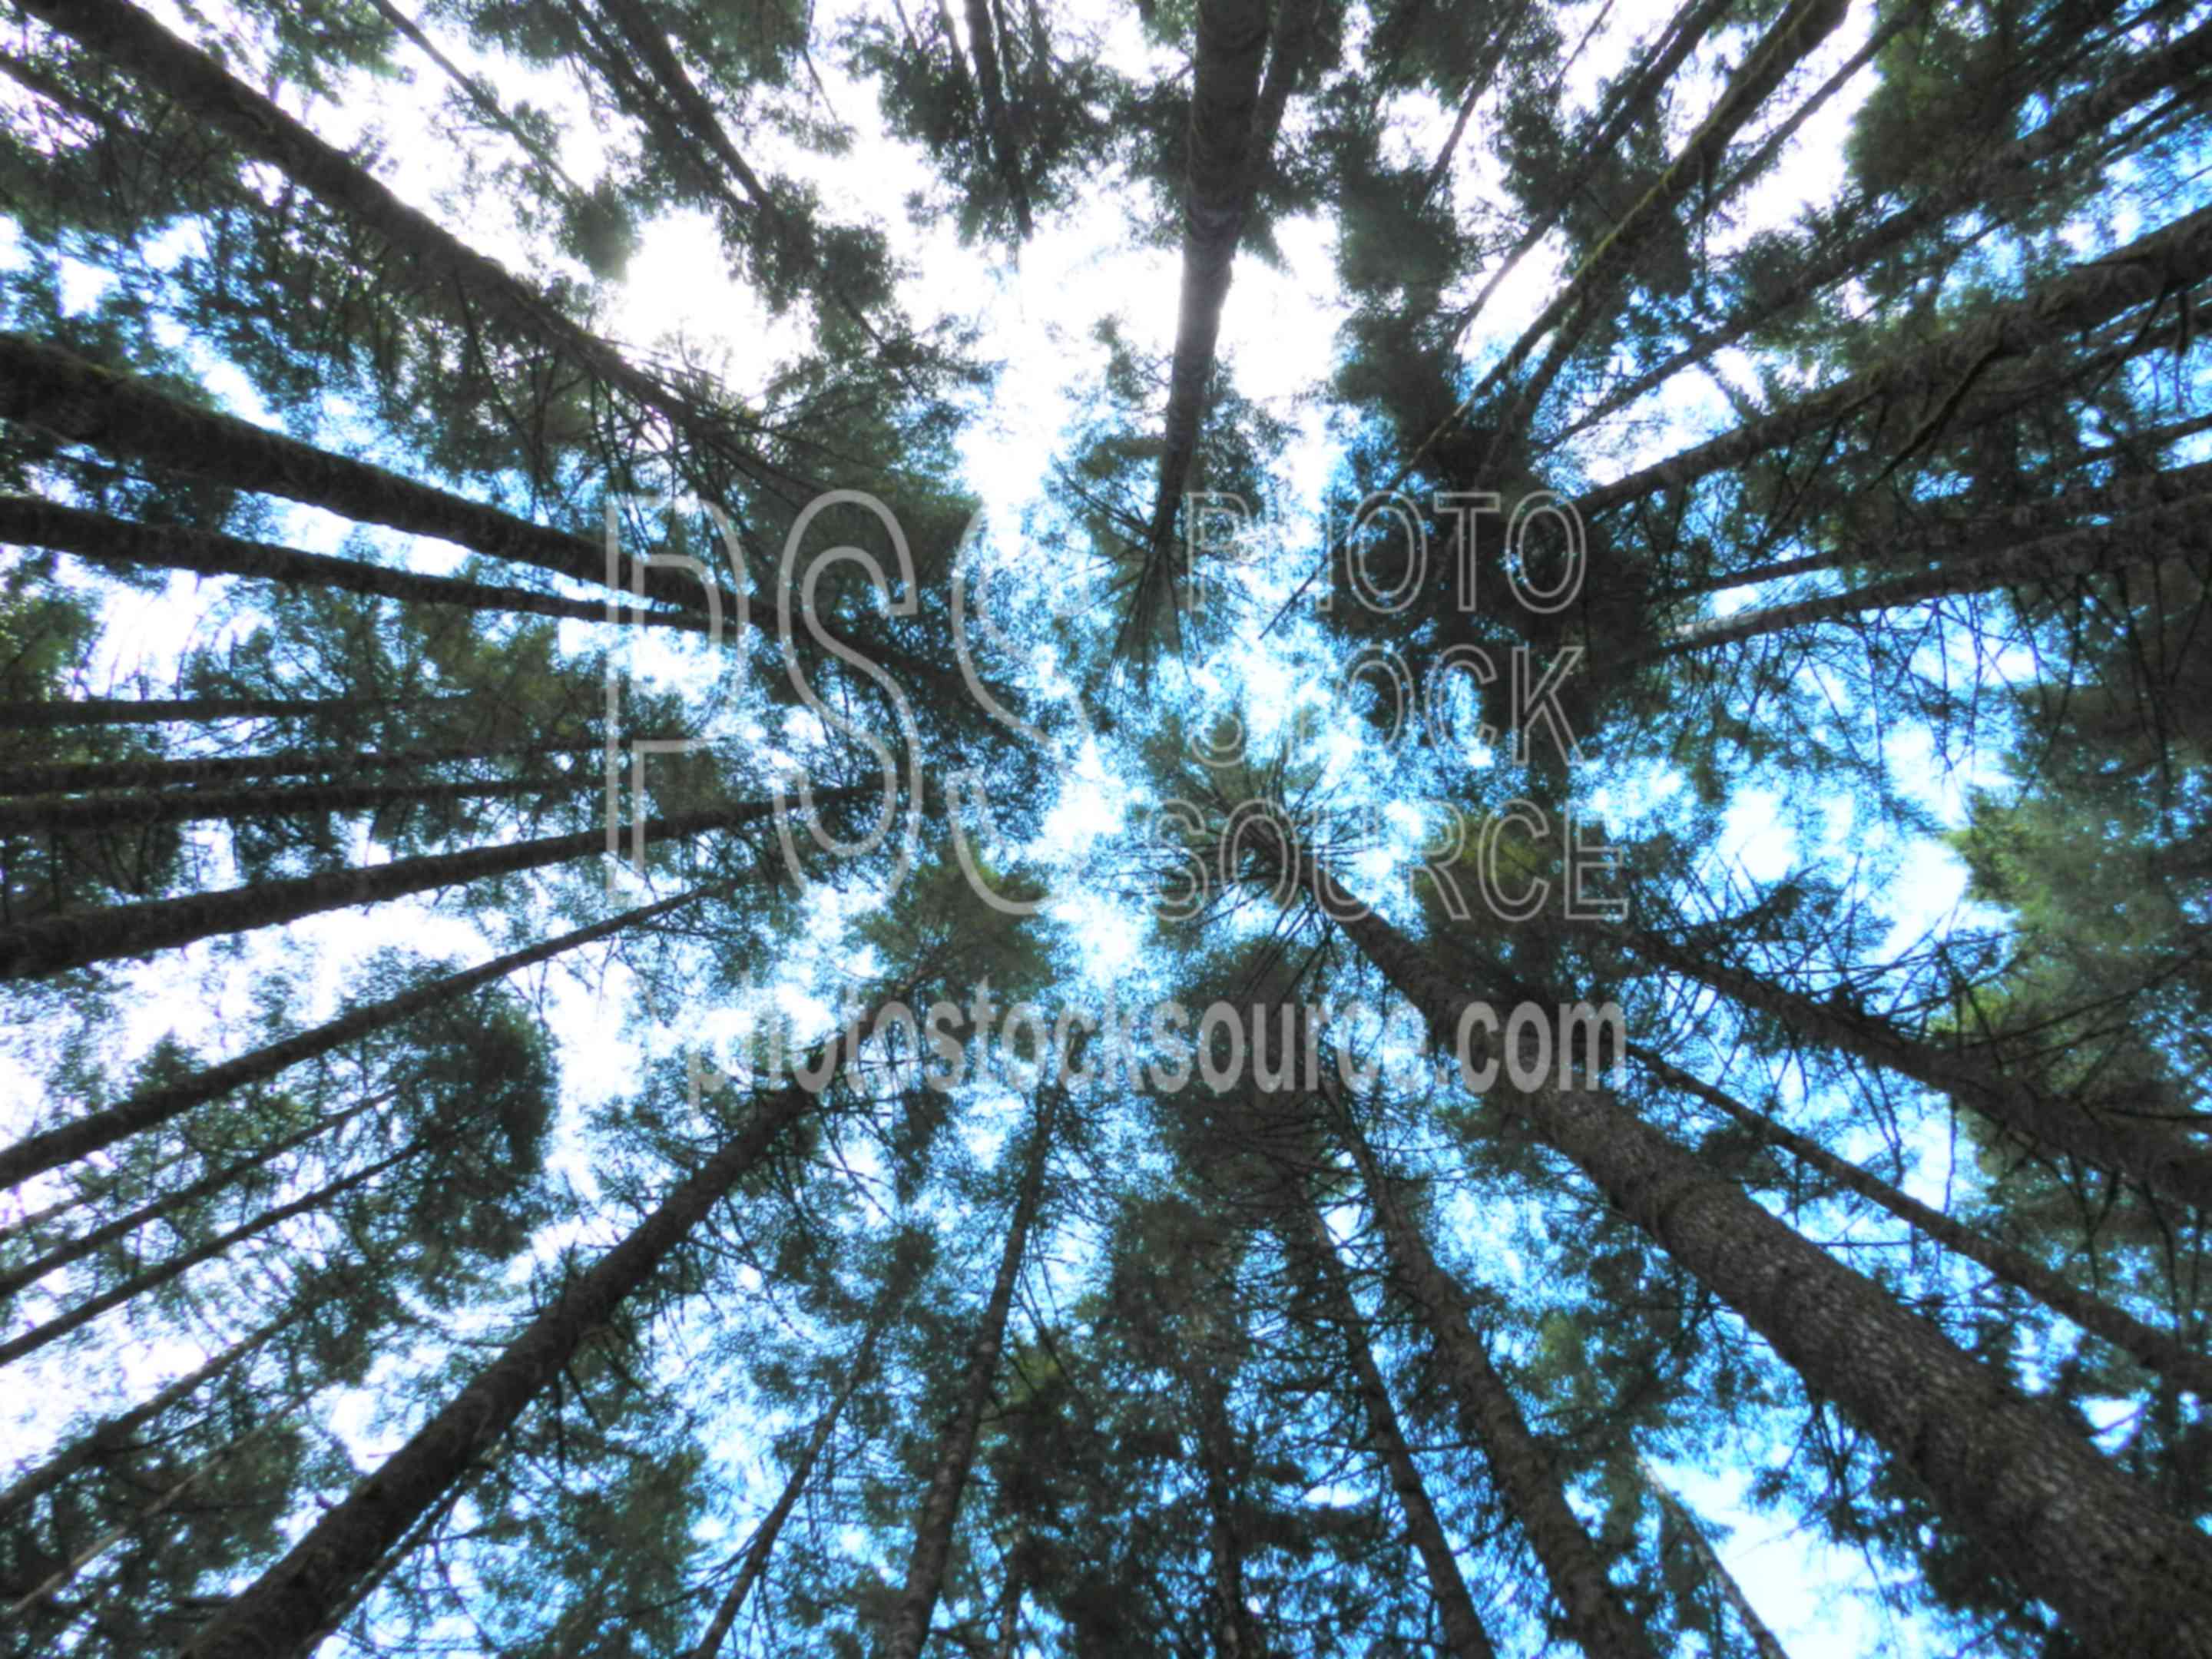 Tall Douglas Fir Trees,fir,douglas fir,tree,forest,pseudotsuga menziesii